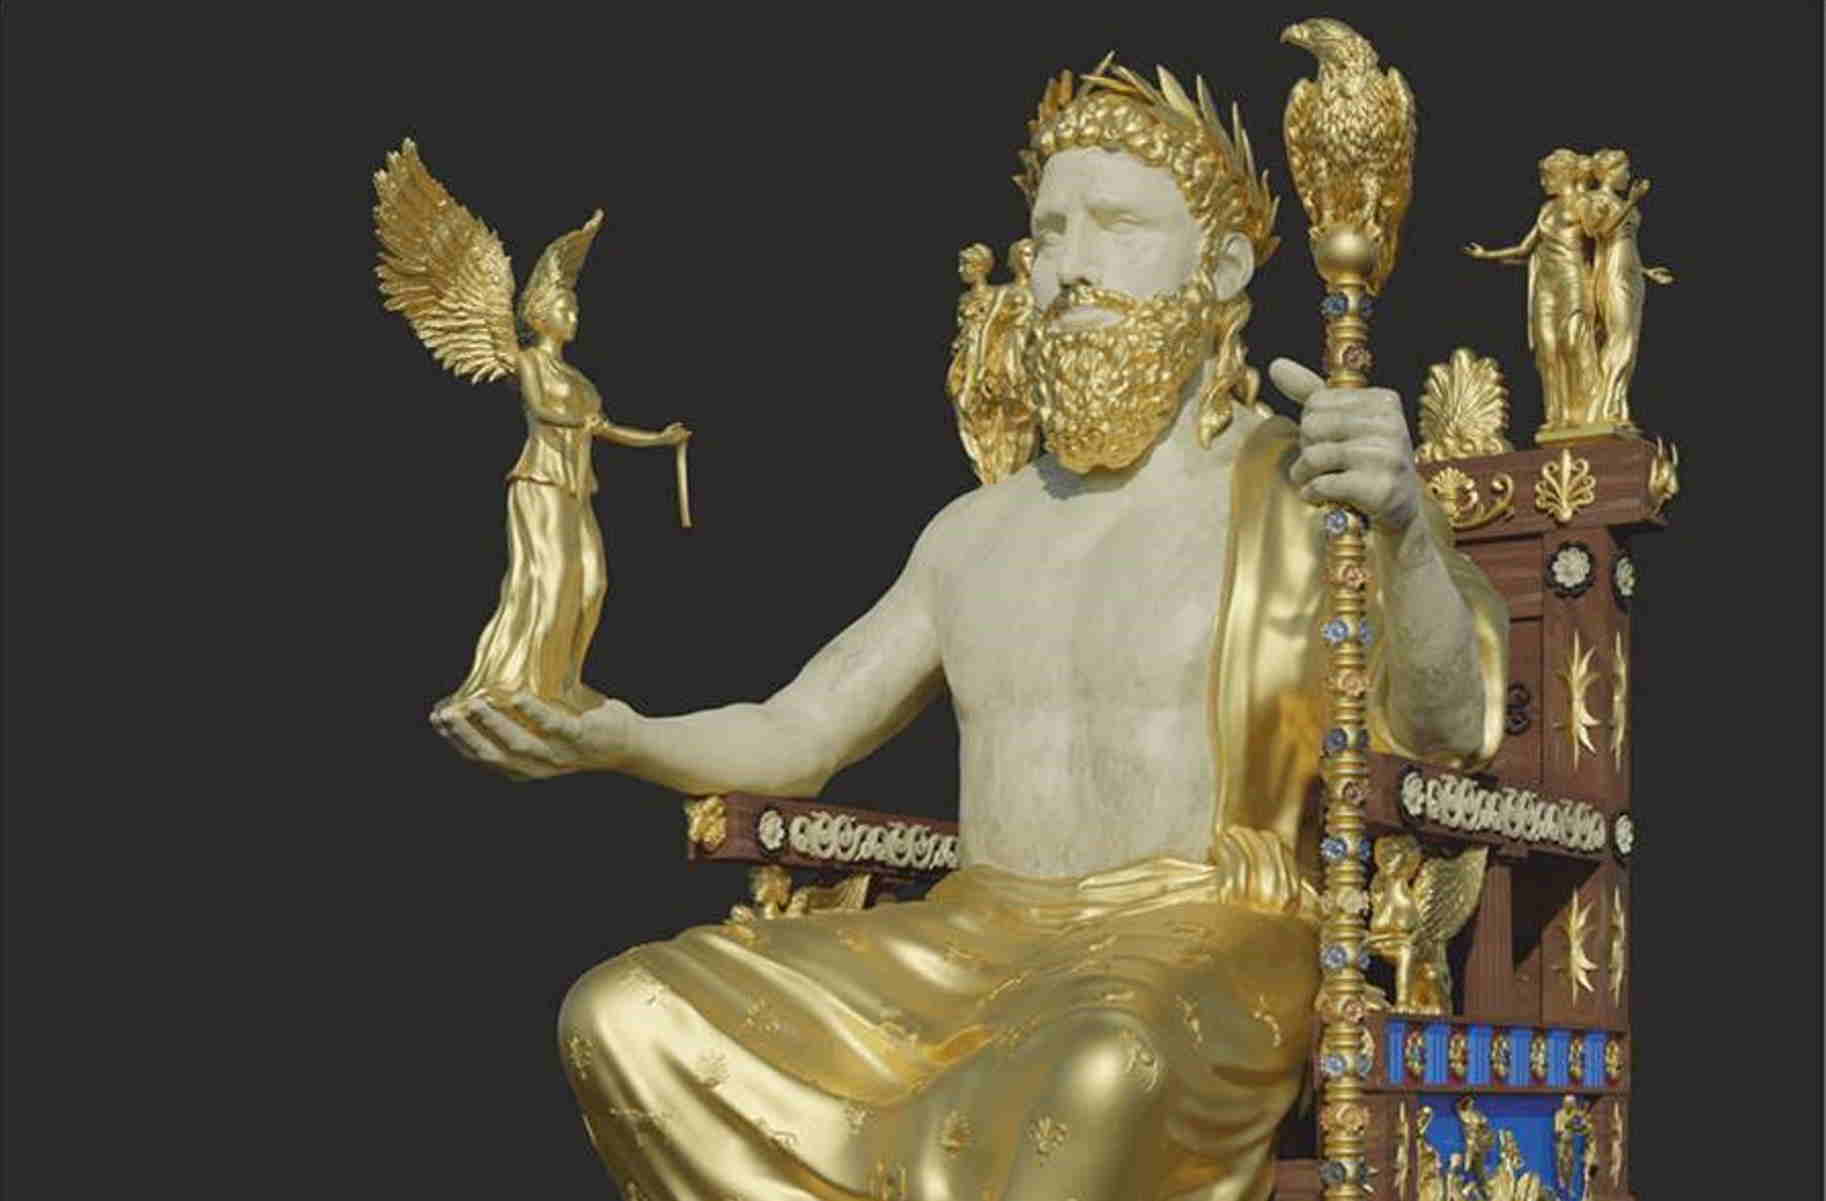 Αρχαία Ολυμπία: «Ξαναζωντανεύει» το χρυσελεφάντινο άγαλμα του Δία μετά από 2.500 χρόνια